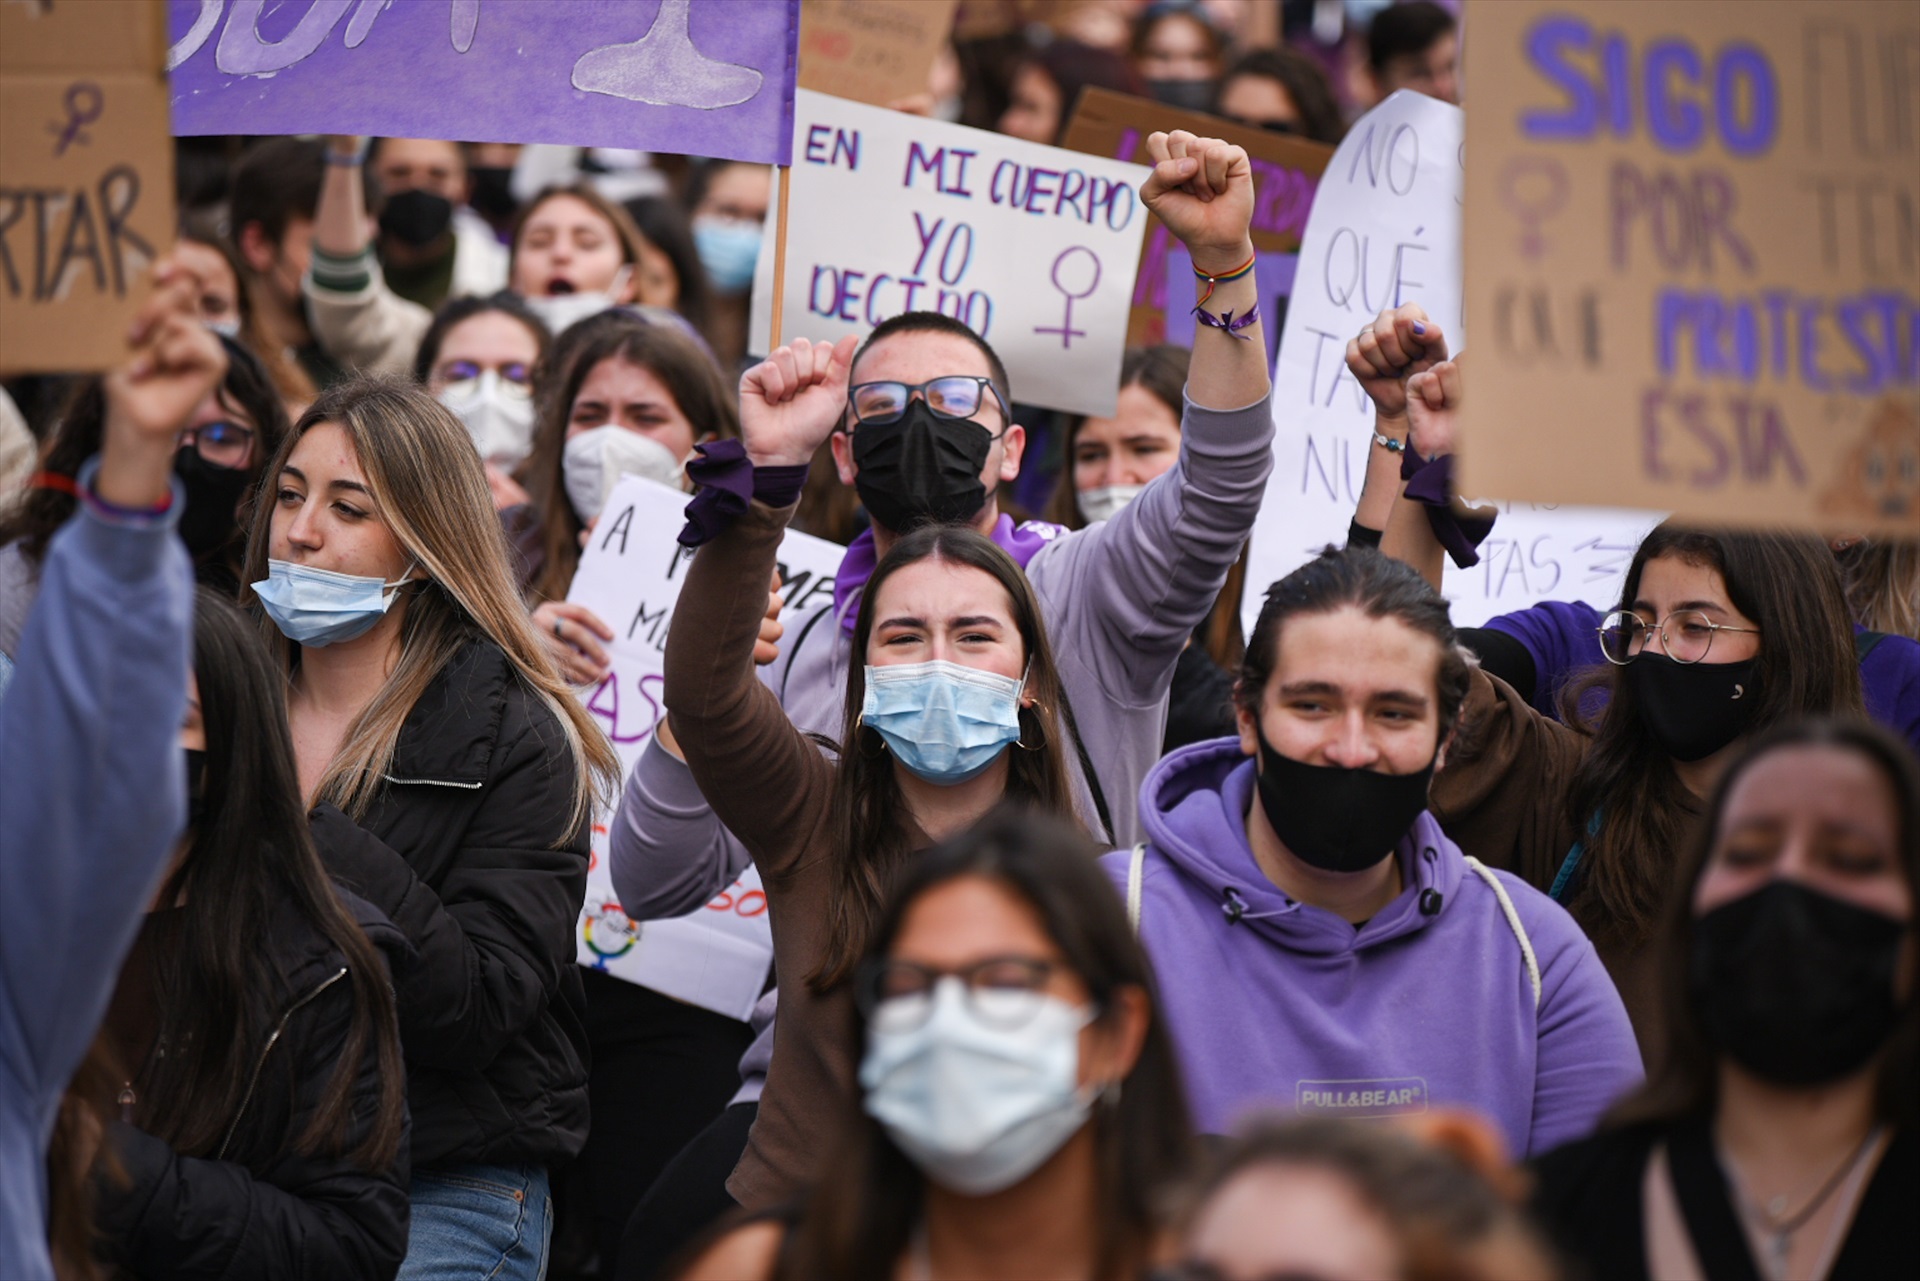 Varias personas con carteles participan en una manifestación estudiantil feminista por el 8M, Día Internacional de la Mujer. -Jorge Gil / Europa Press